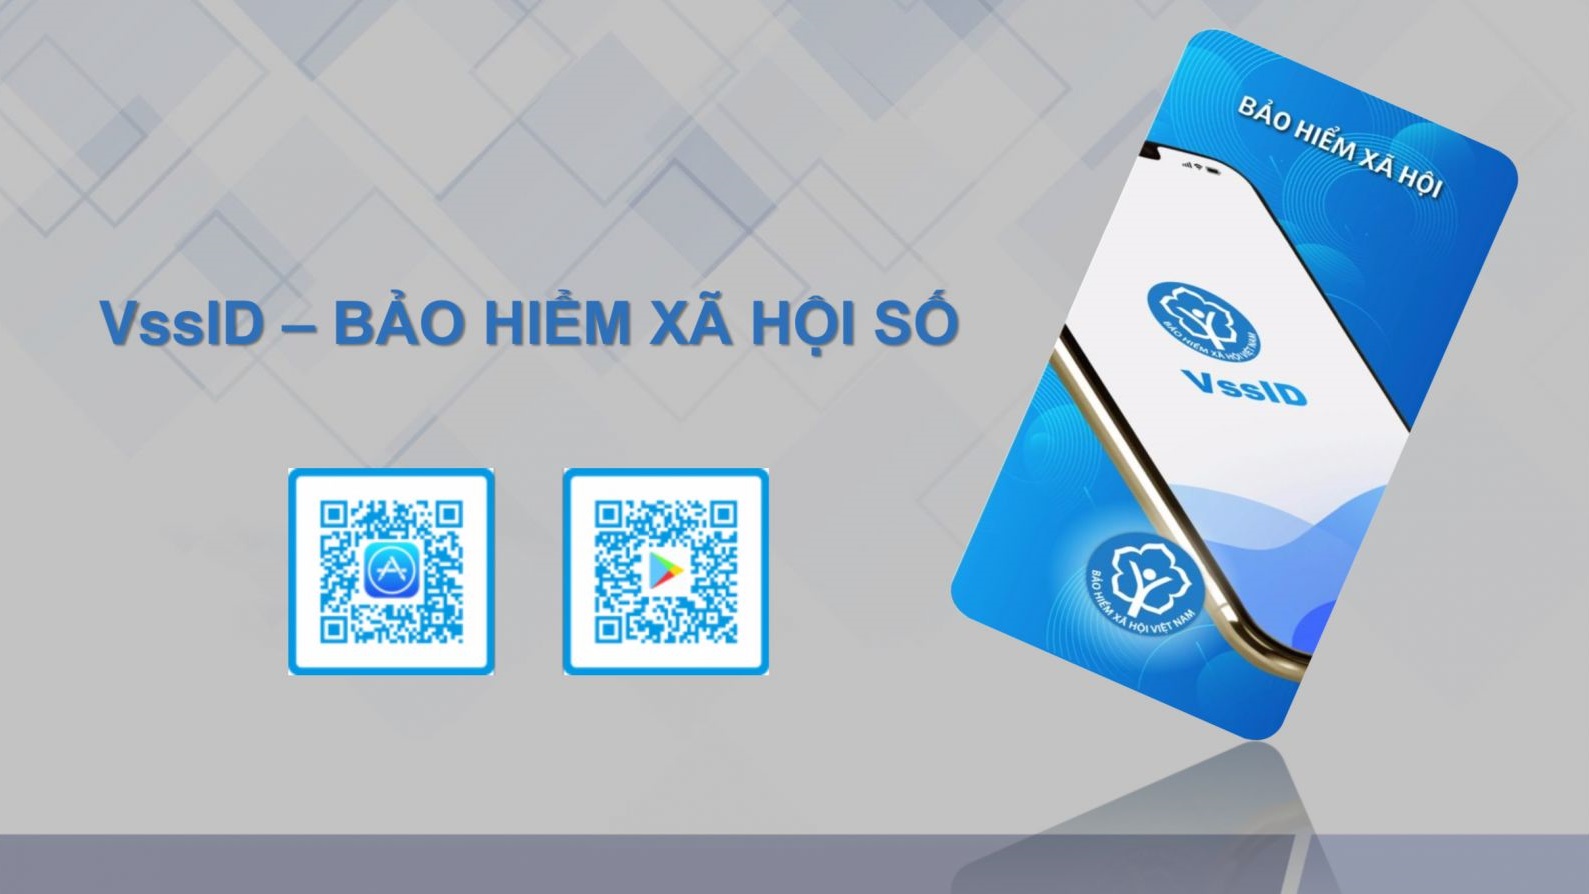 Hướng dẫn tải và cài đặt phần mềm VssID BHXH trên máy tính chi tiết - Networks Business Online Việt Nam & International VH2